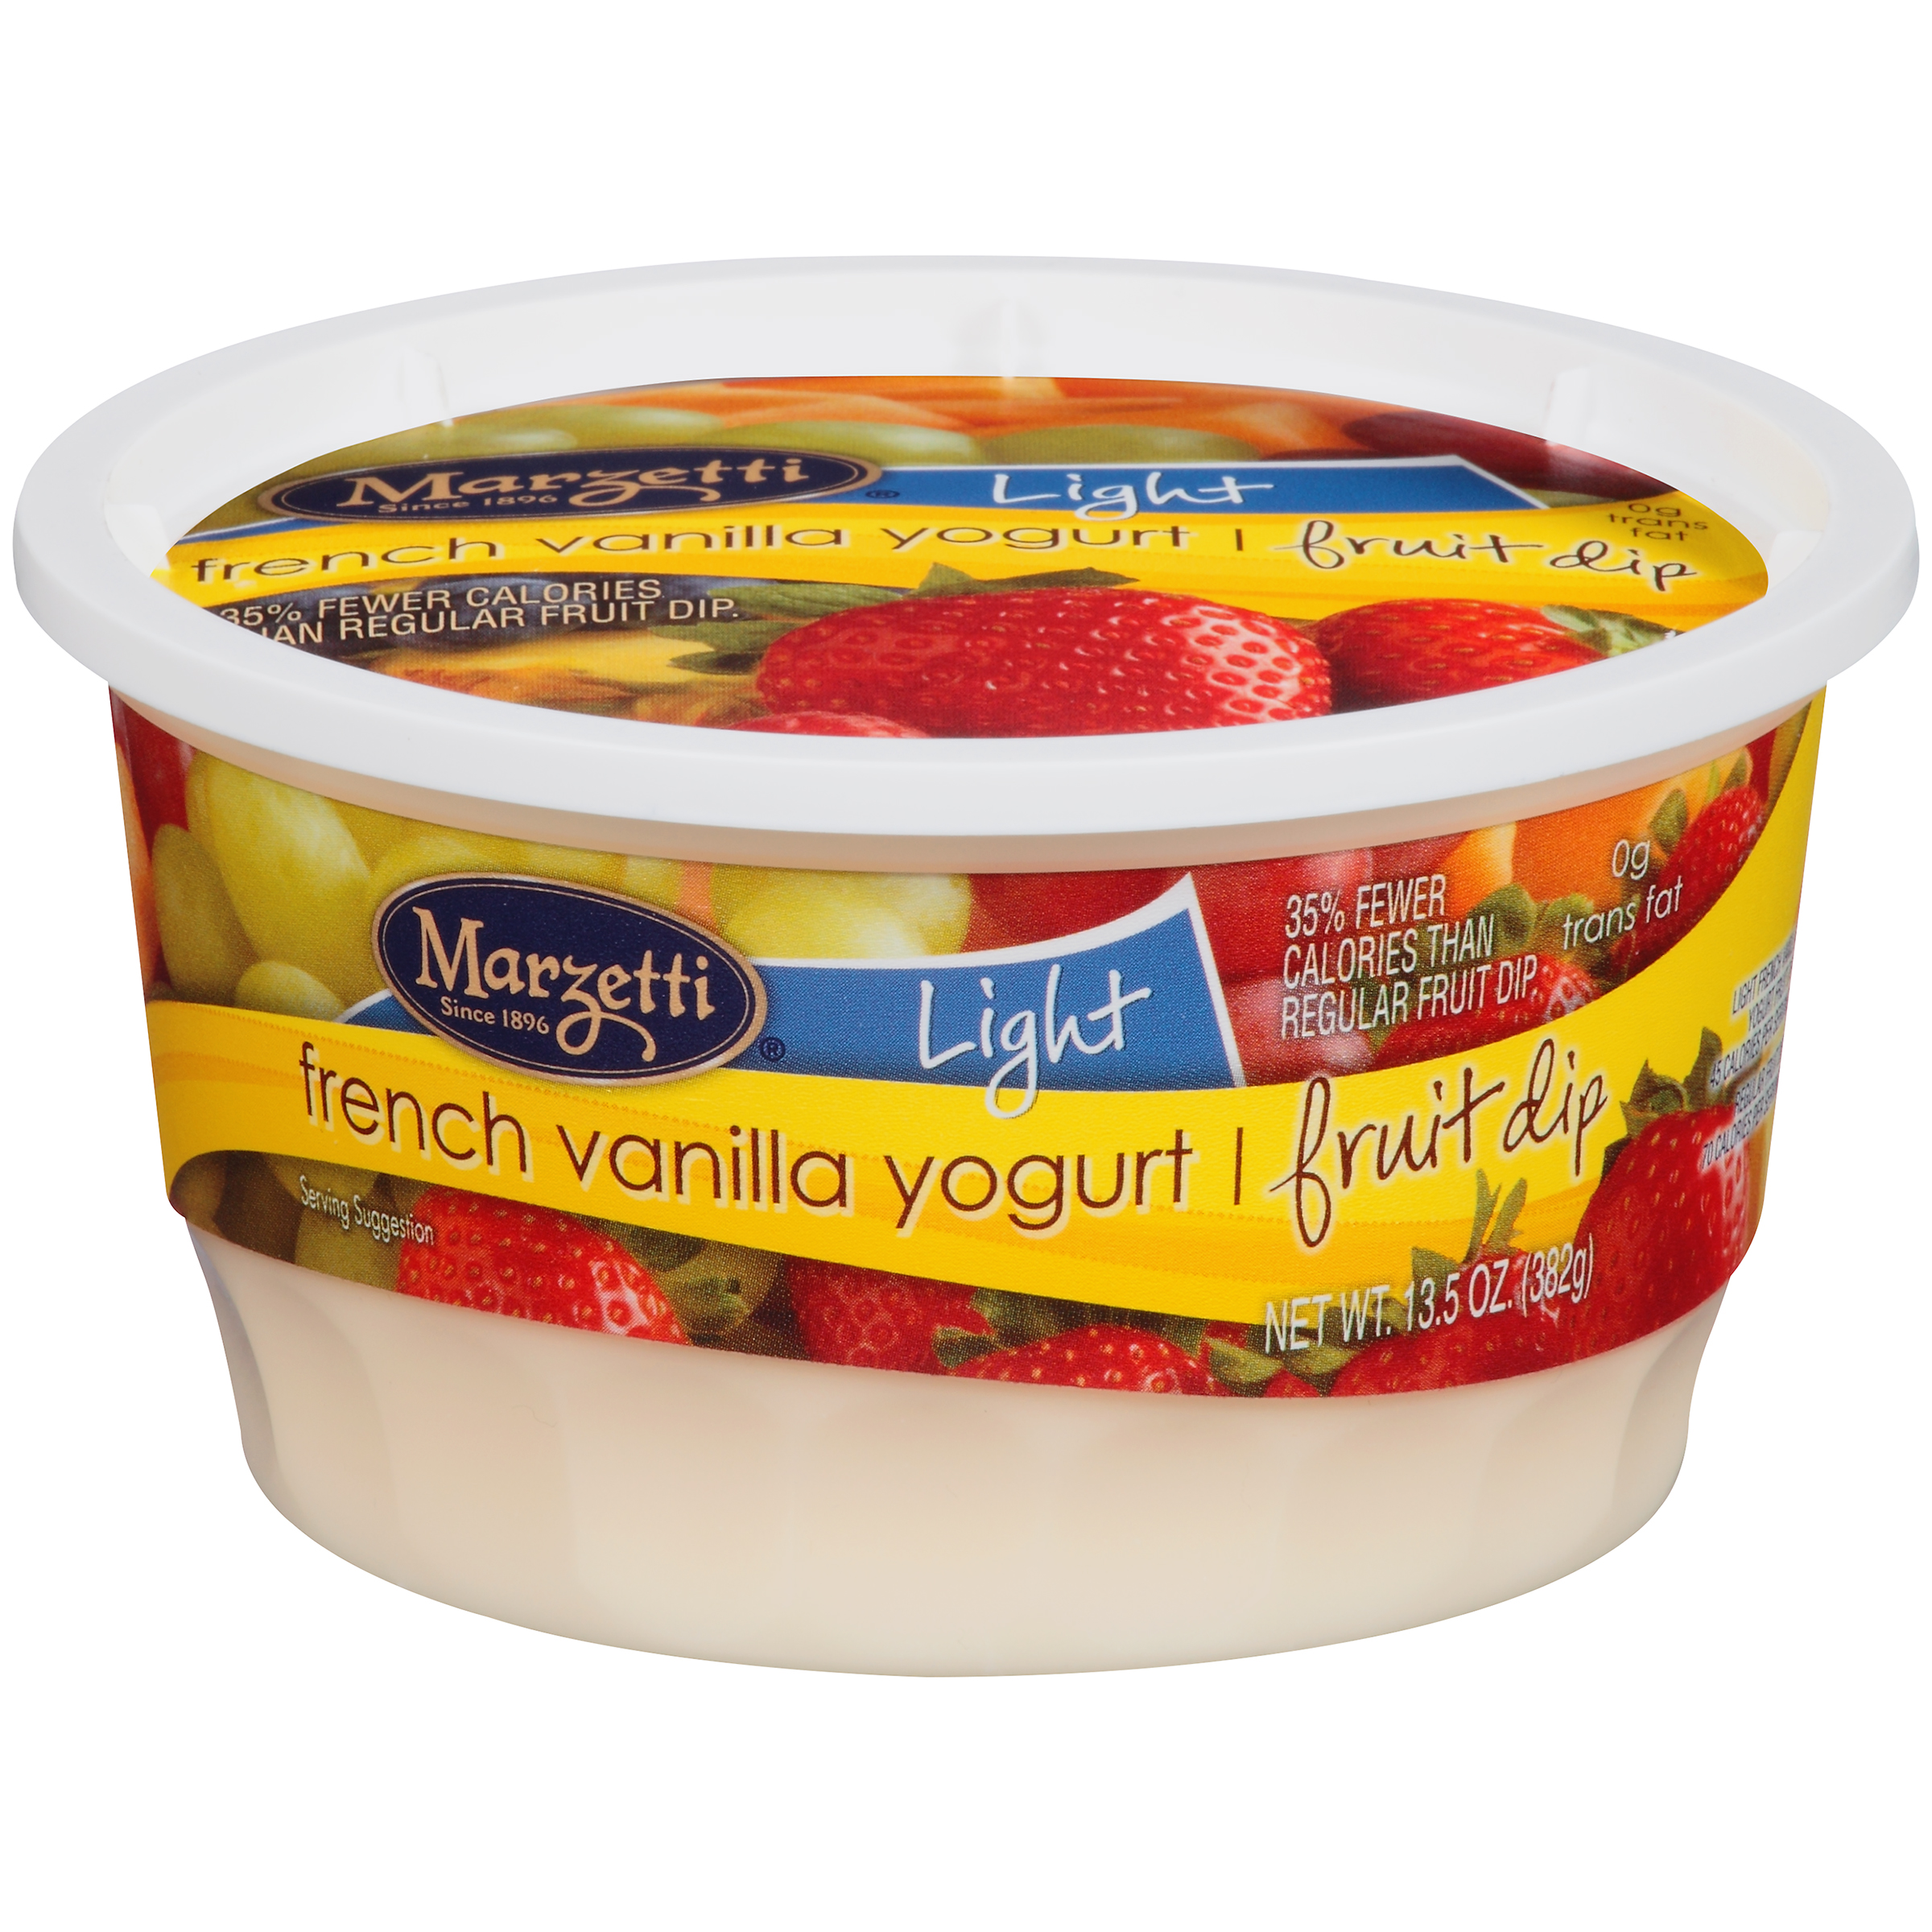 Light French Vanilla Yogurt Fruit Dip